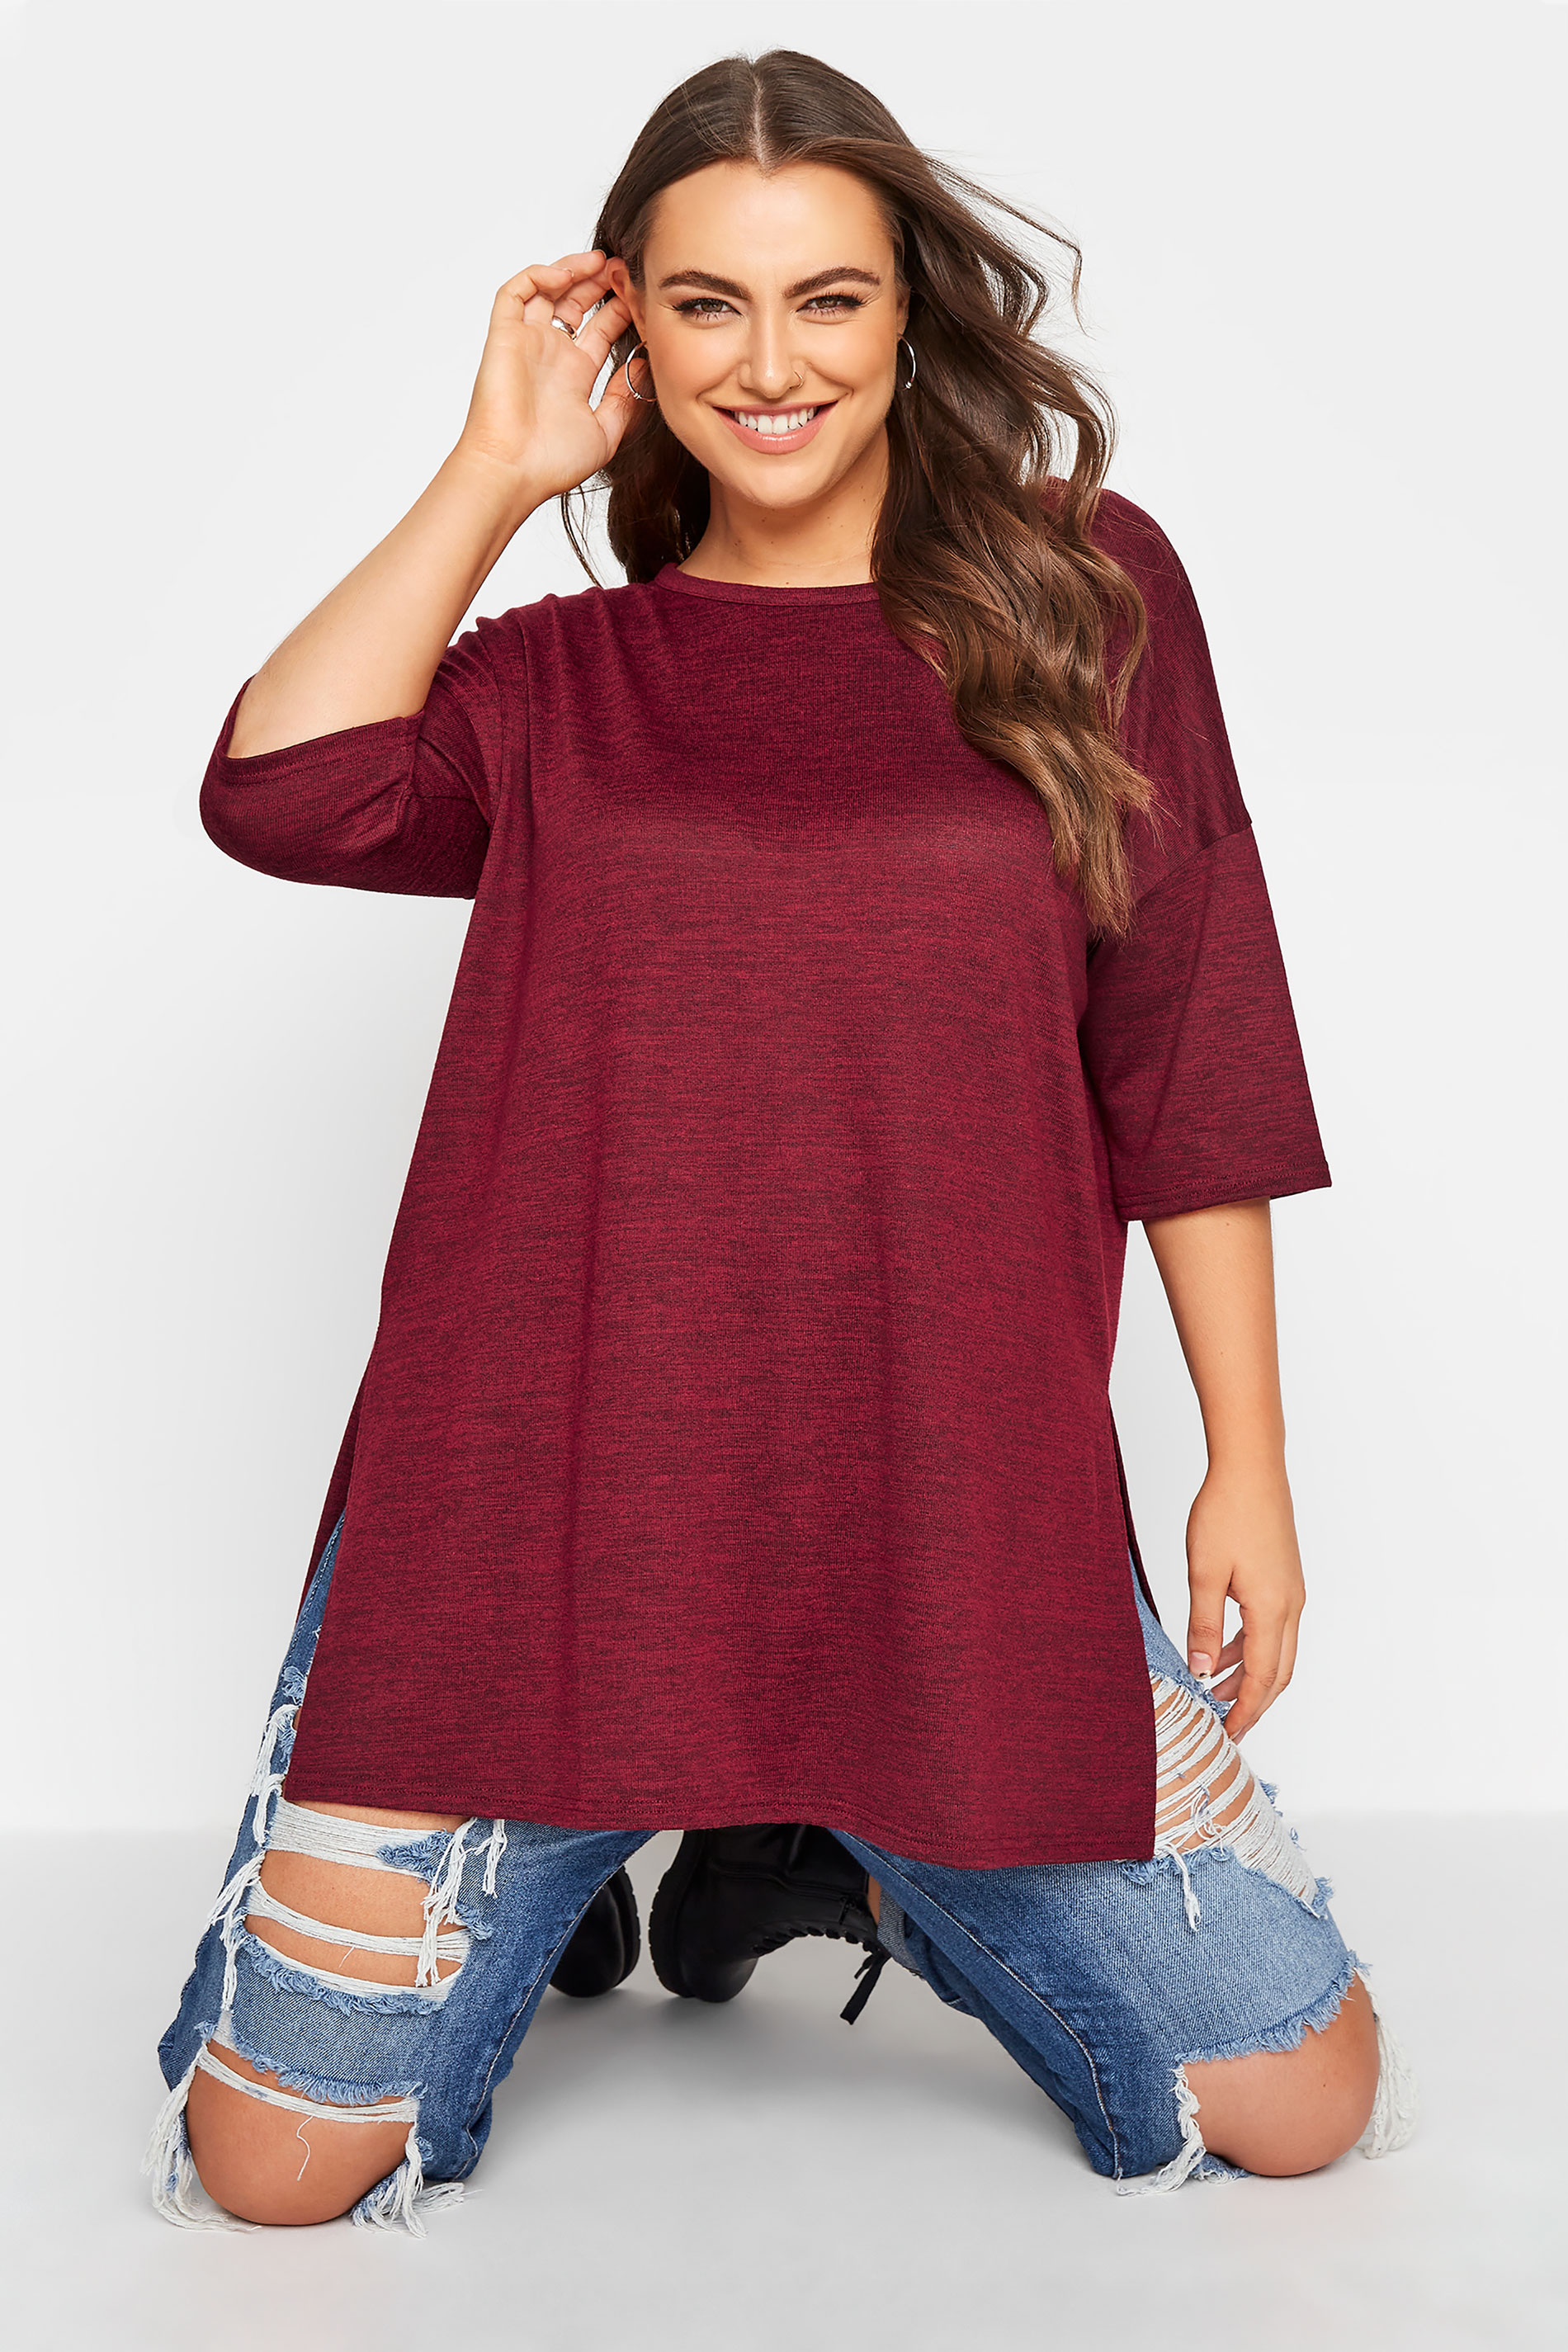 Grande taille  Tops Grande taille  T-Shirts Basiques & Débardeurs | T-Shirt Rouge Cerise en Jersey - EL69898